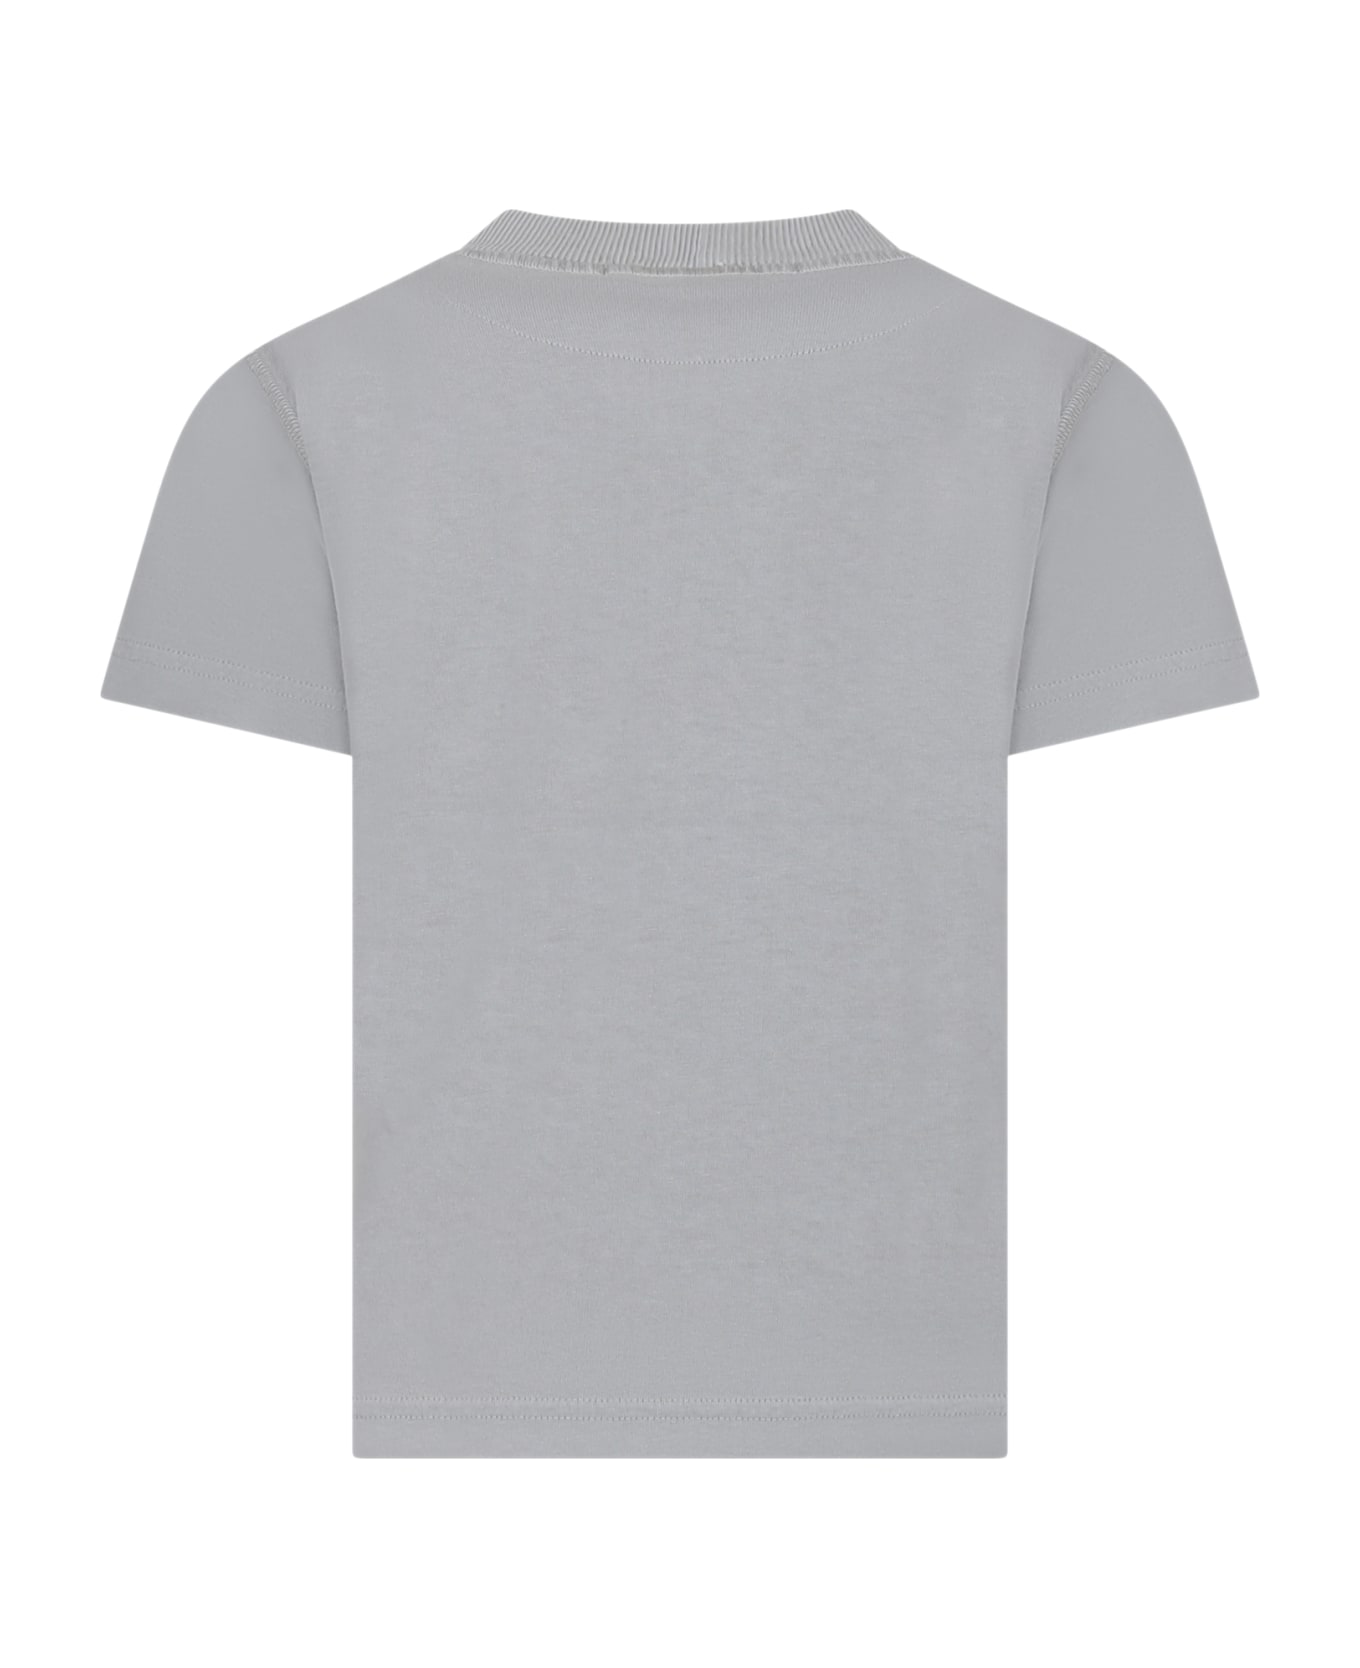 Stone Island Junior Grey T-shirt For Boy With Logo - Pearl grey